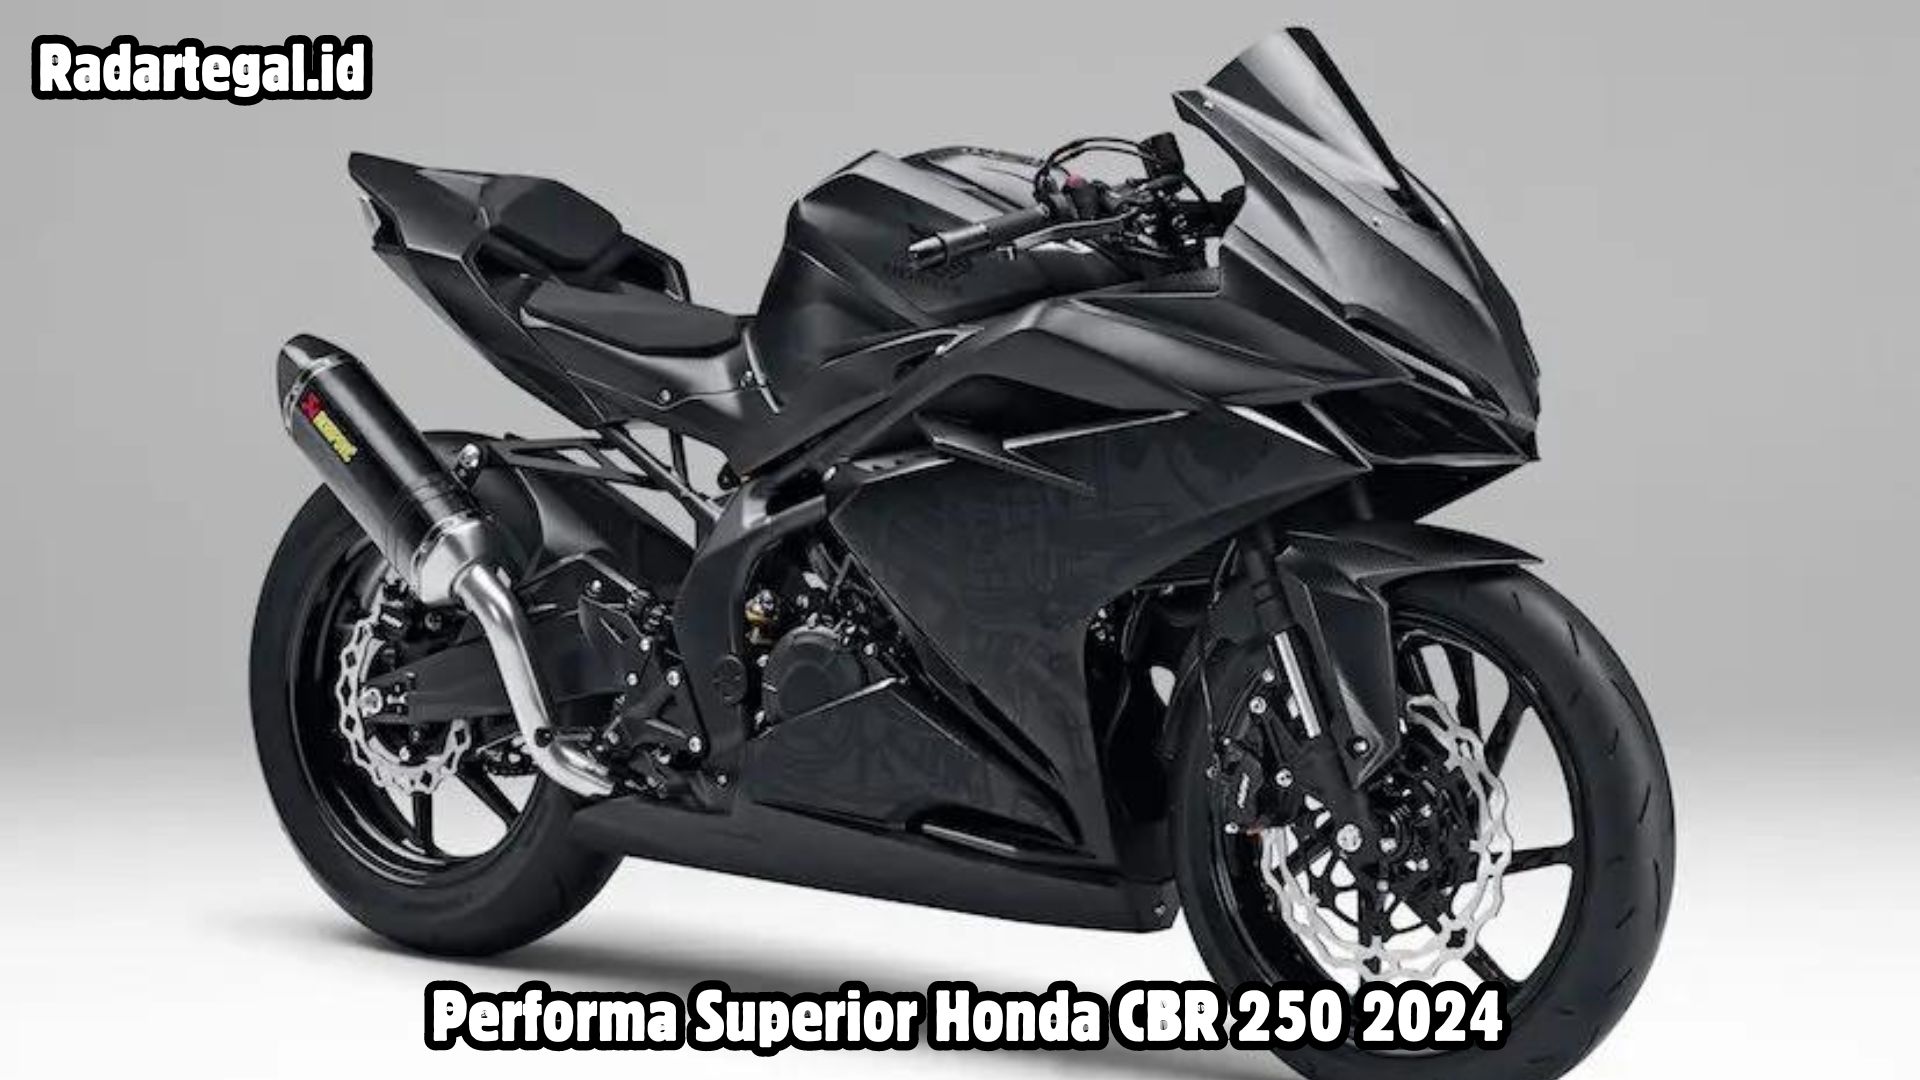 Honda CBR 250 2024 Pilihan Menarik Bagi Para Pecinta Motor Sport, dengan Desain Sporty dan Performa Superior